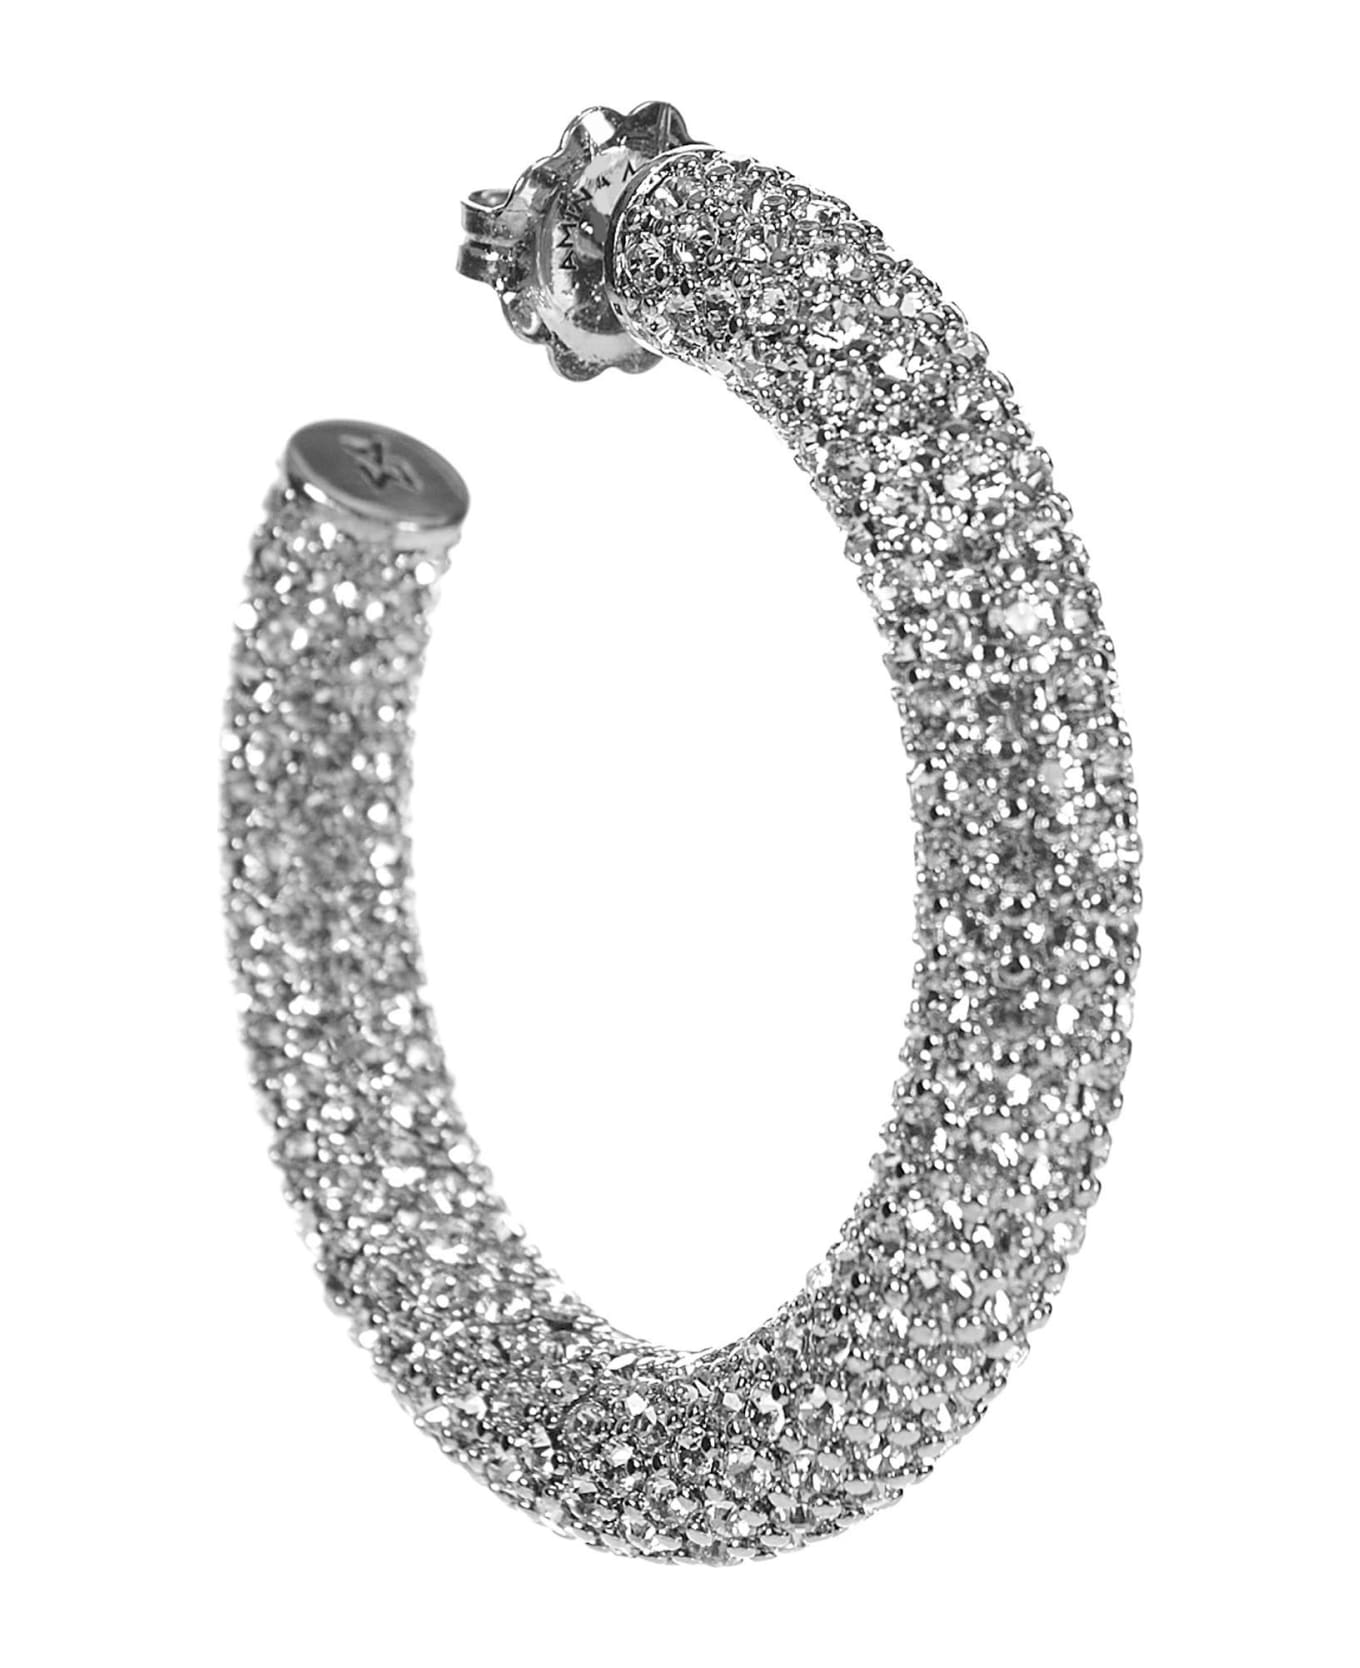 Amina Muaddi Cameron Medium Earrings - Silver